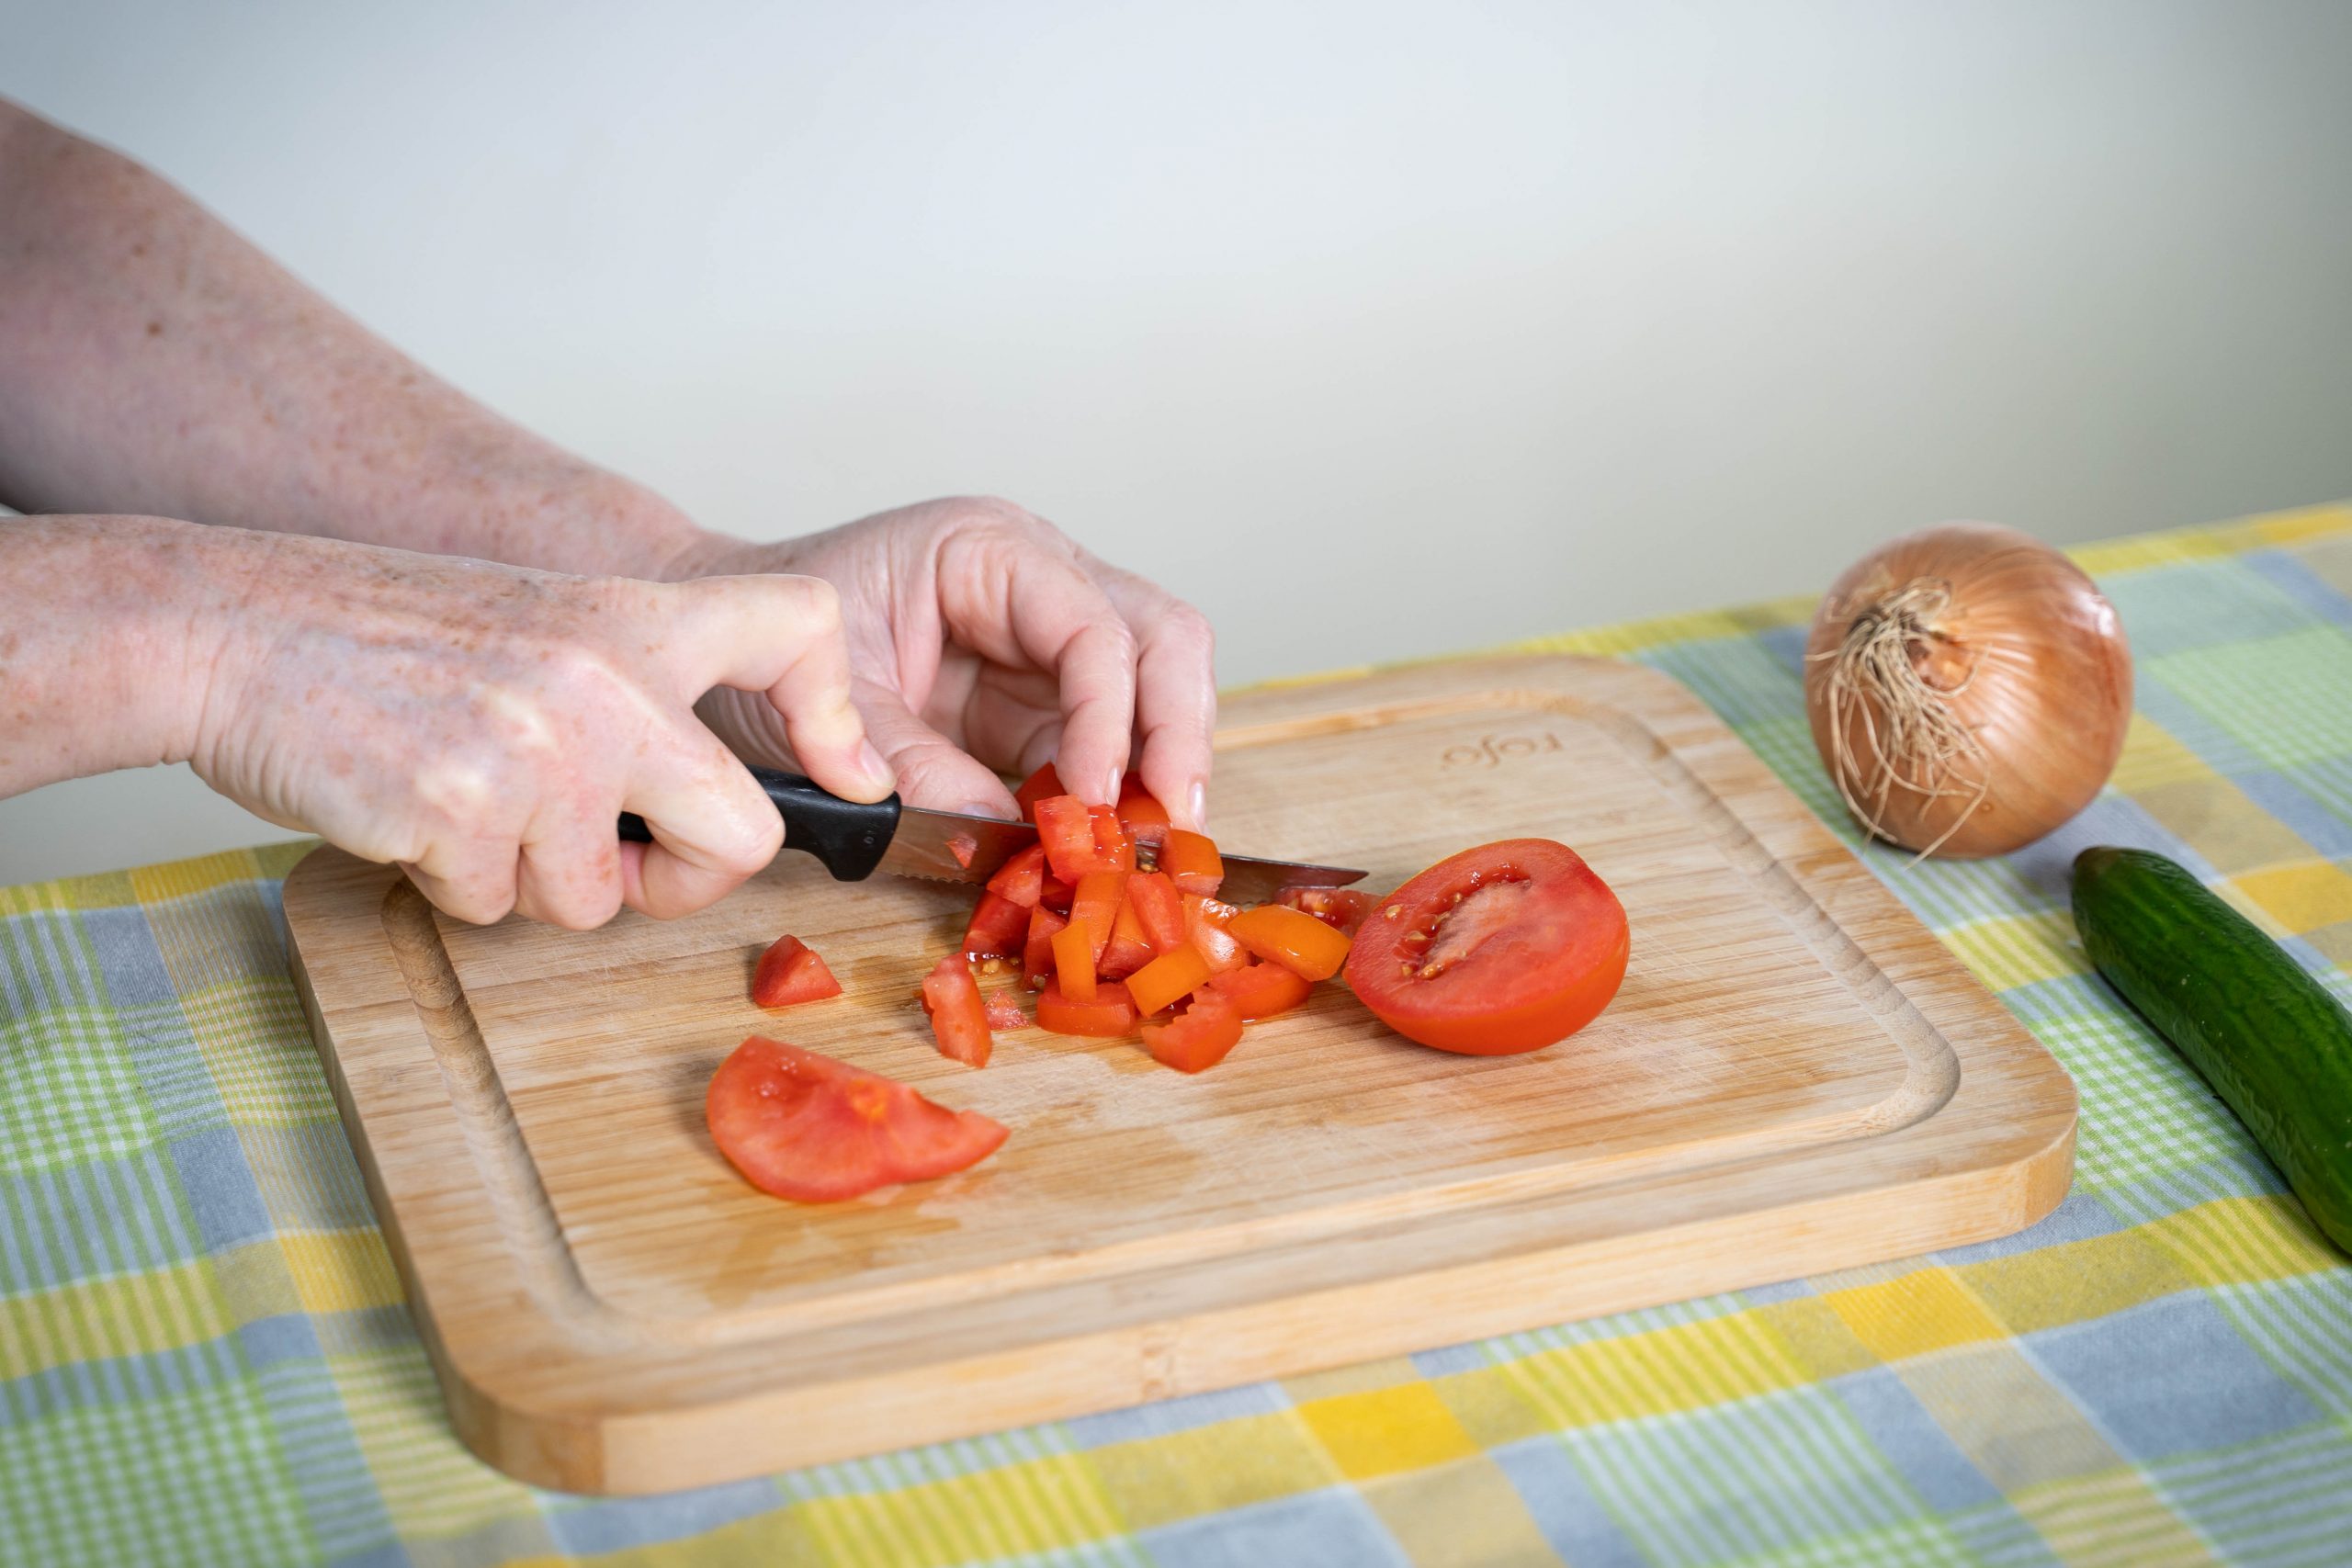 .ידיים חותכות עגבניה לסלט באמצעות סכין, על גבי קרש חיתוך. לצד הקרש, על השולחן, מונחים מלפפון ובצל